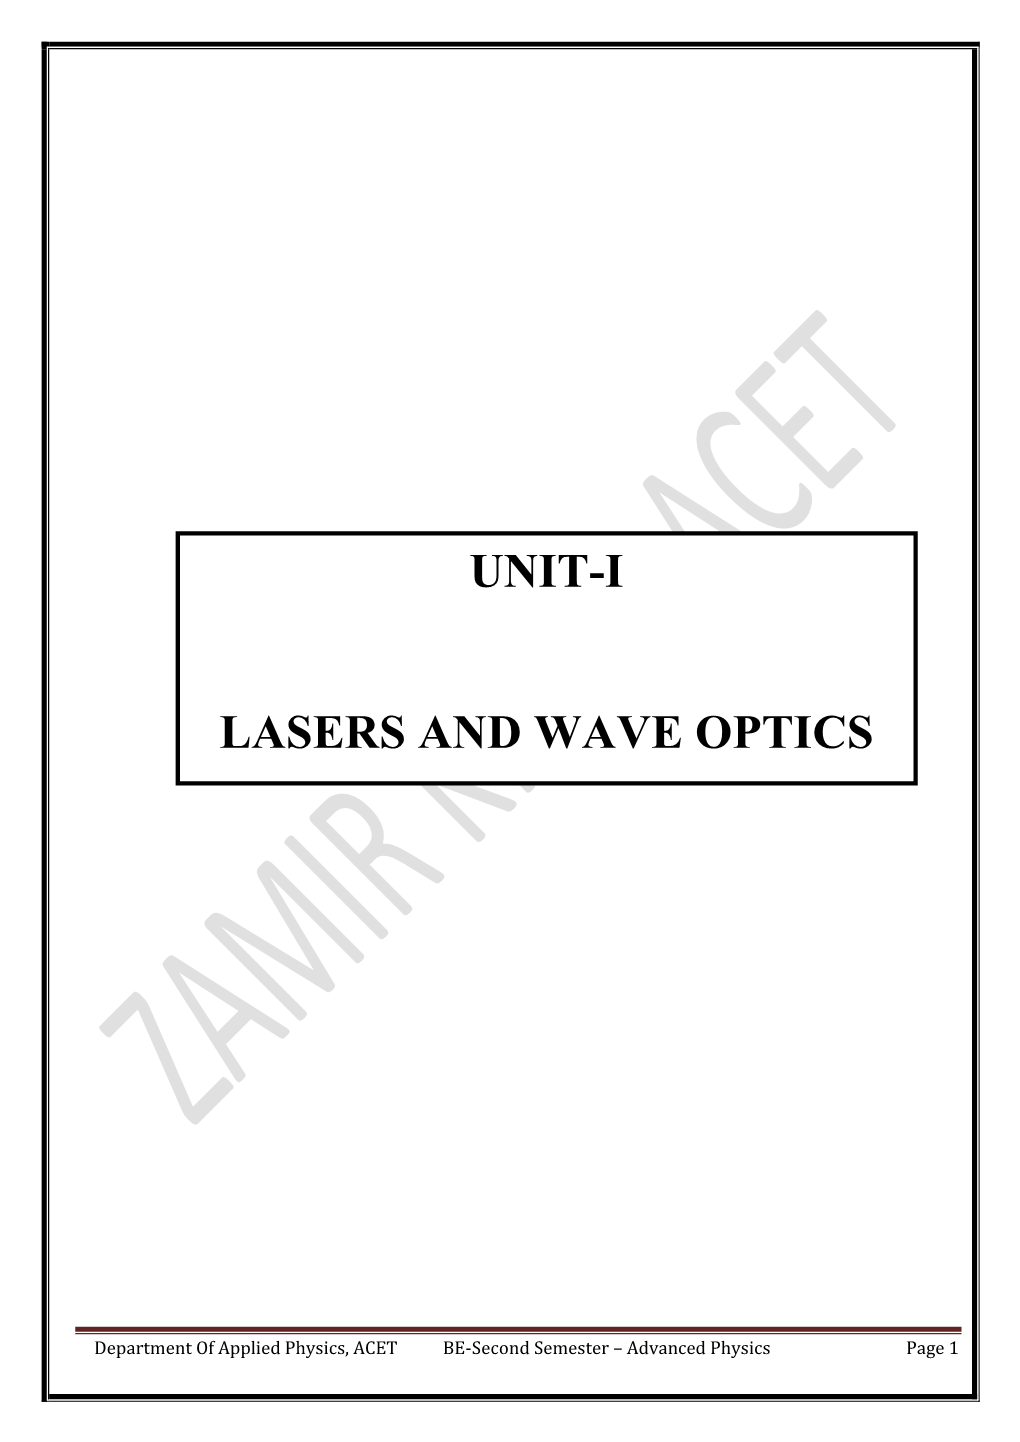 Unit-I Lasers and Wave Optics